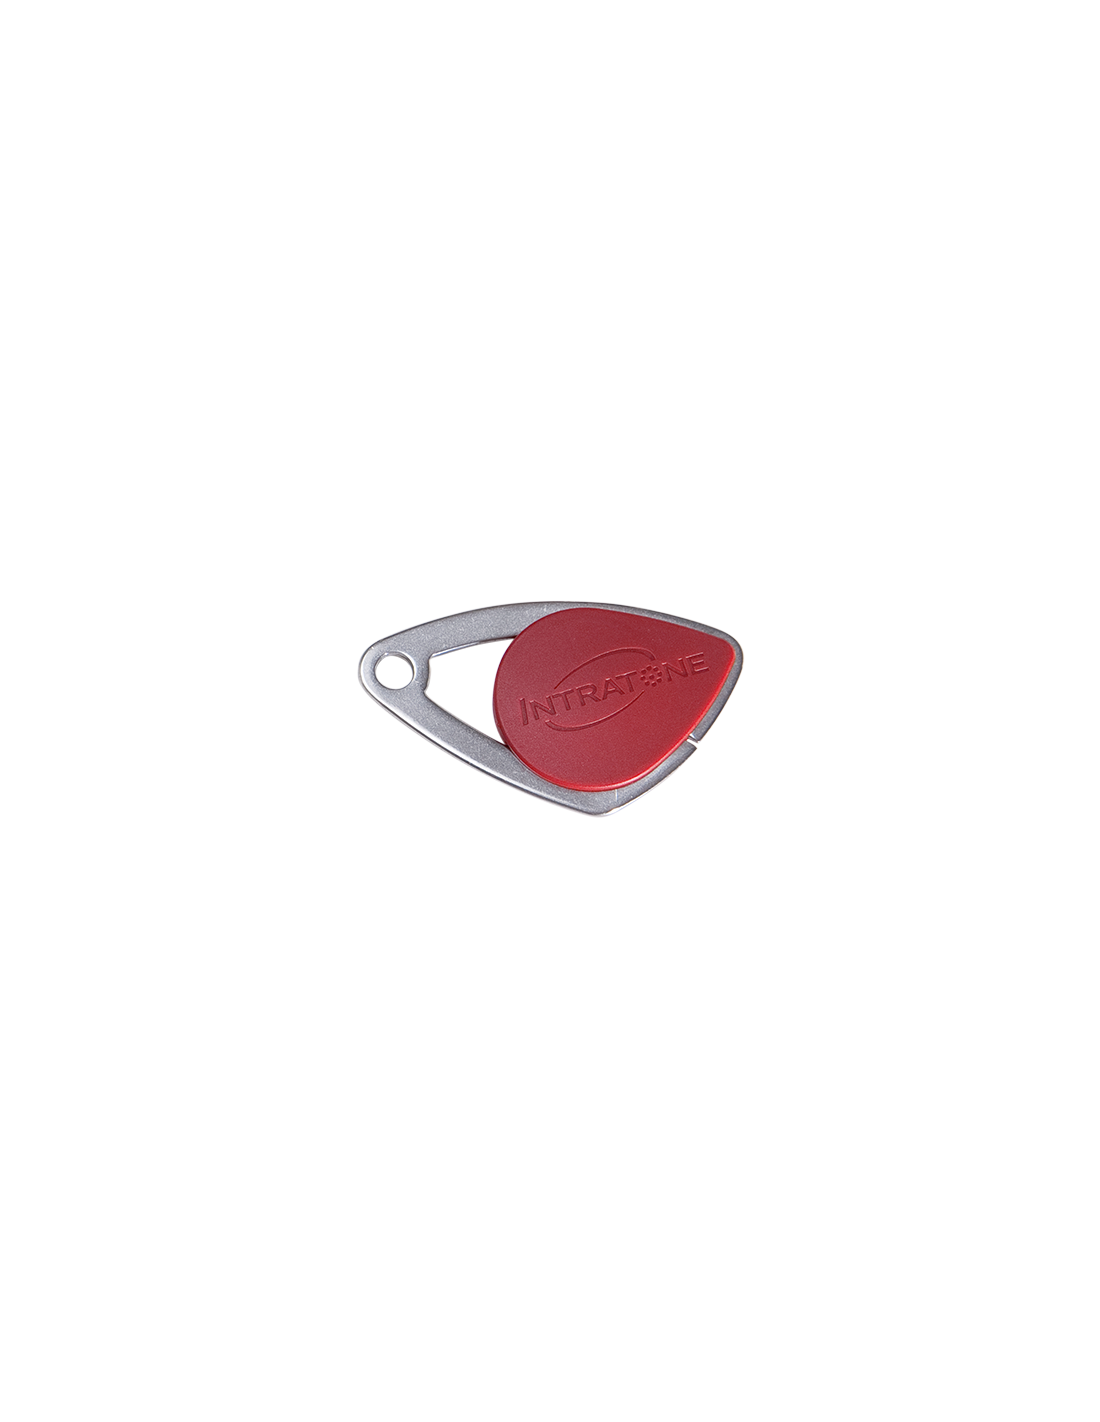 08-0104 - Intratone] Badge de proximité électronique rouge